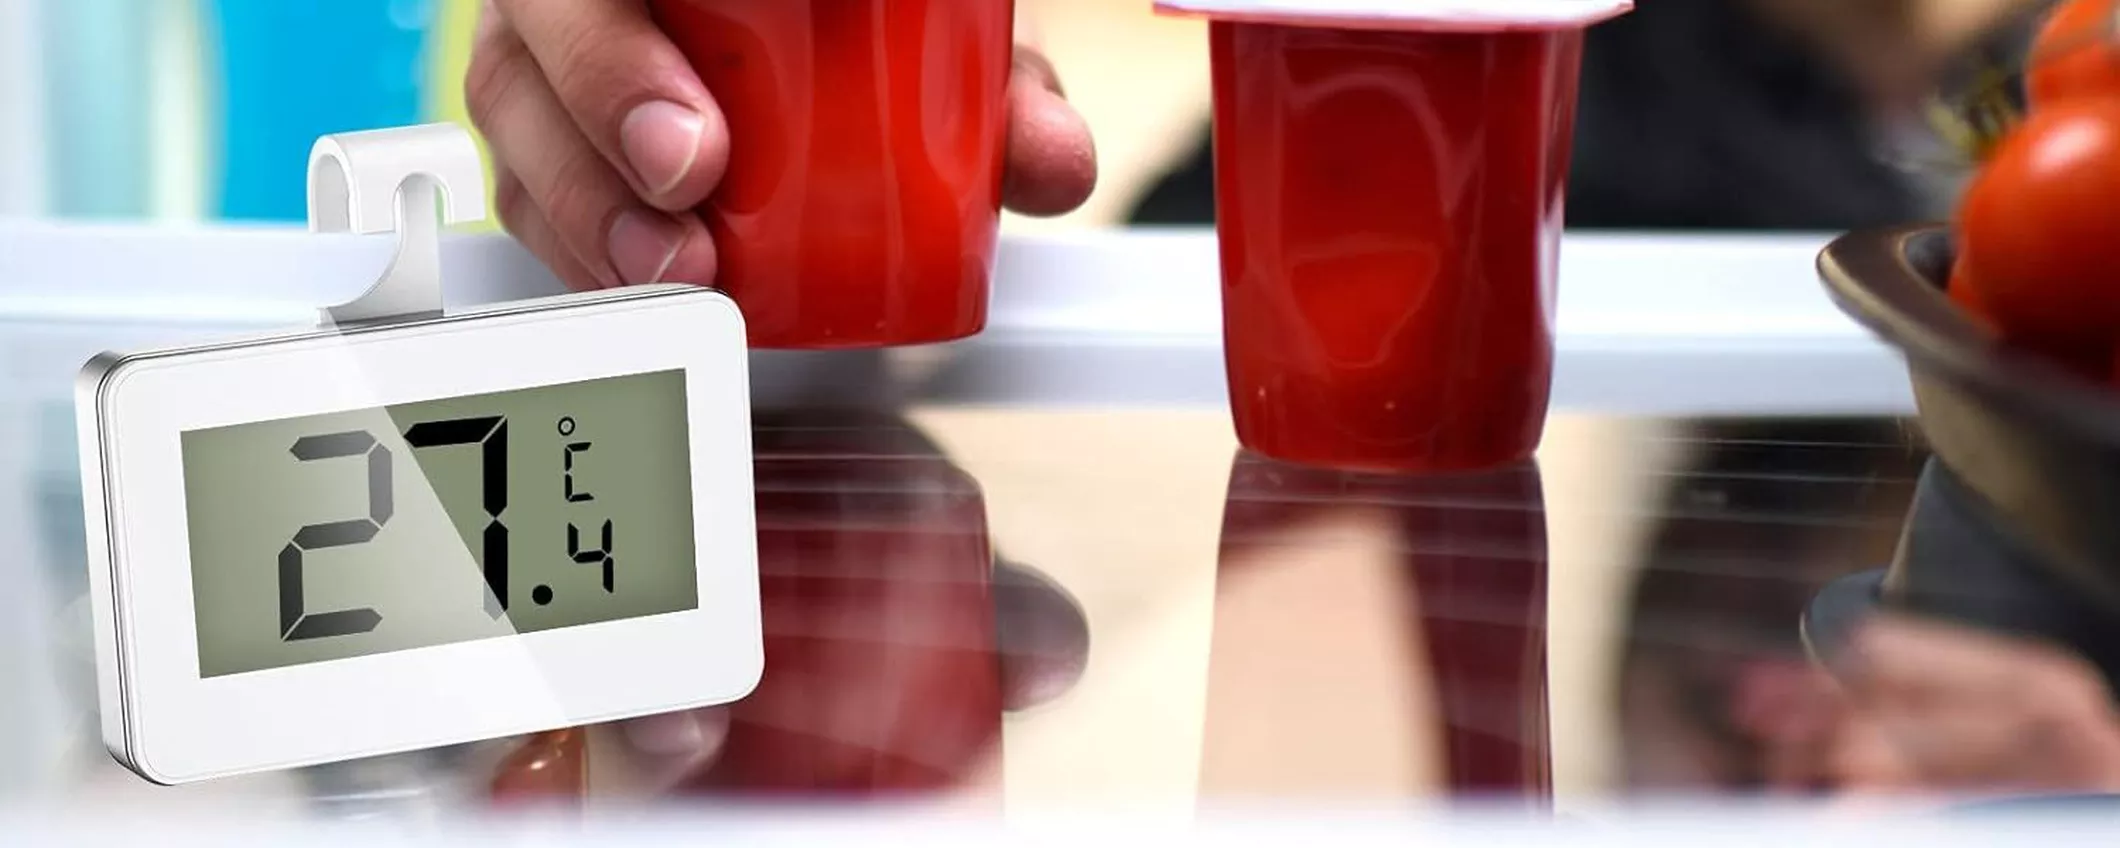 Termometro di precisione per frigo digitale e con display: la confezione da 3 a 6€ su Amazon